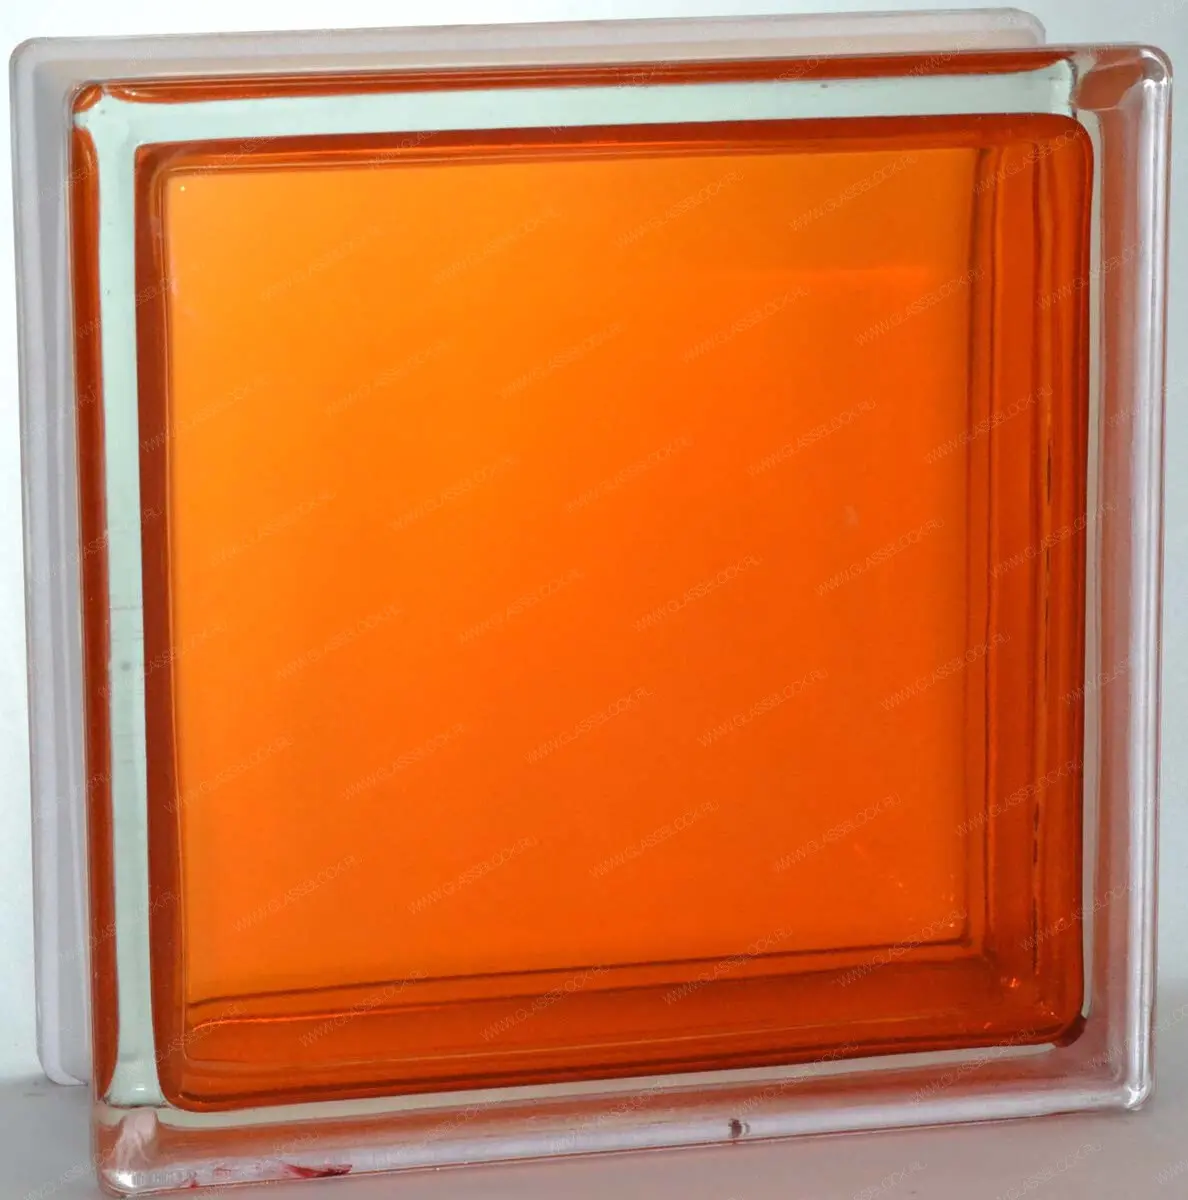 Стеклоблок Гладкий оранжевый 190*190*80 Glass Block